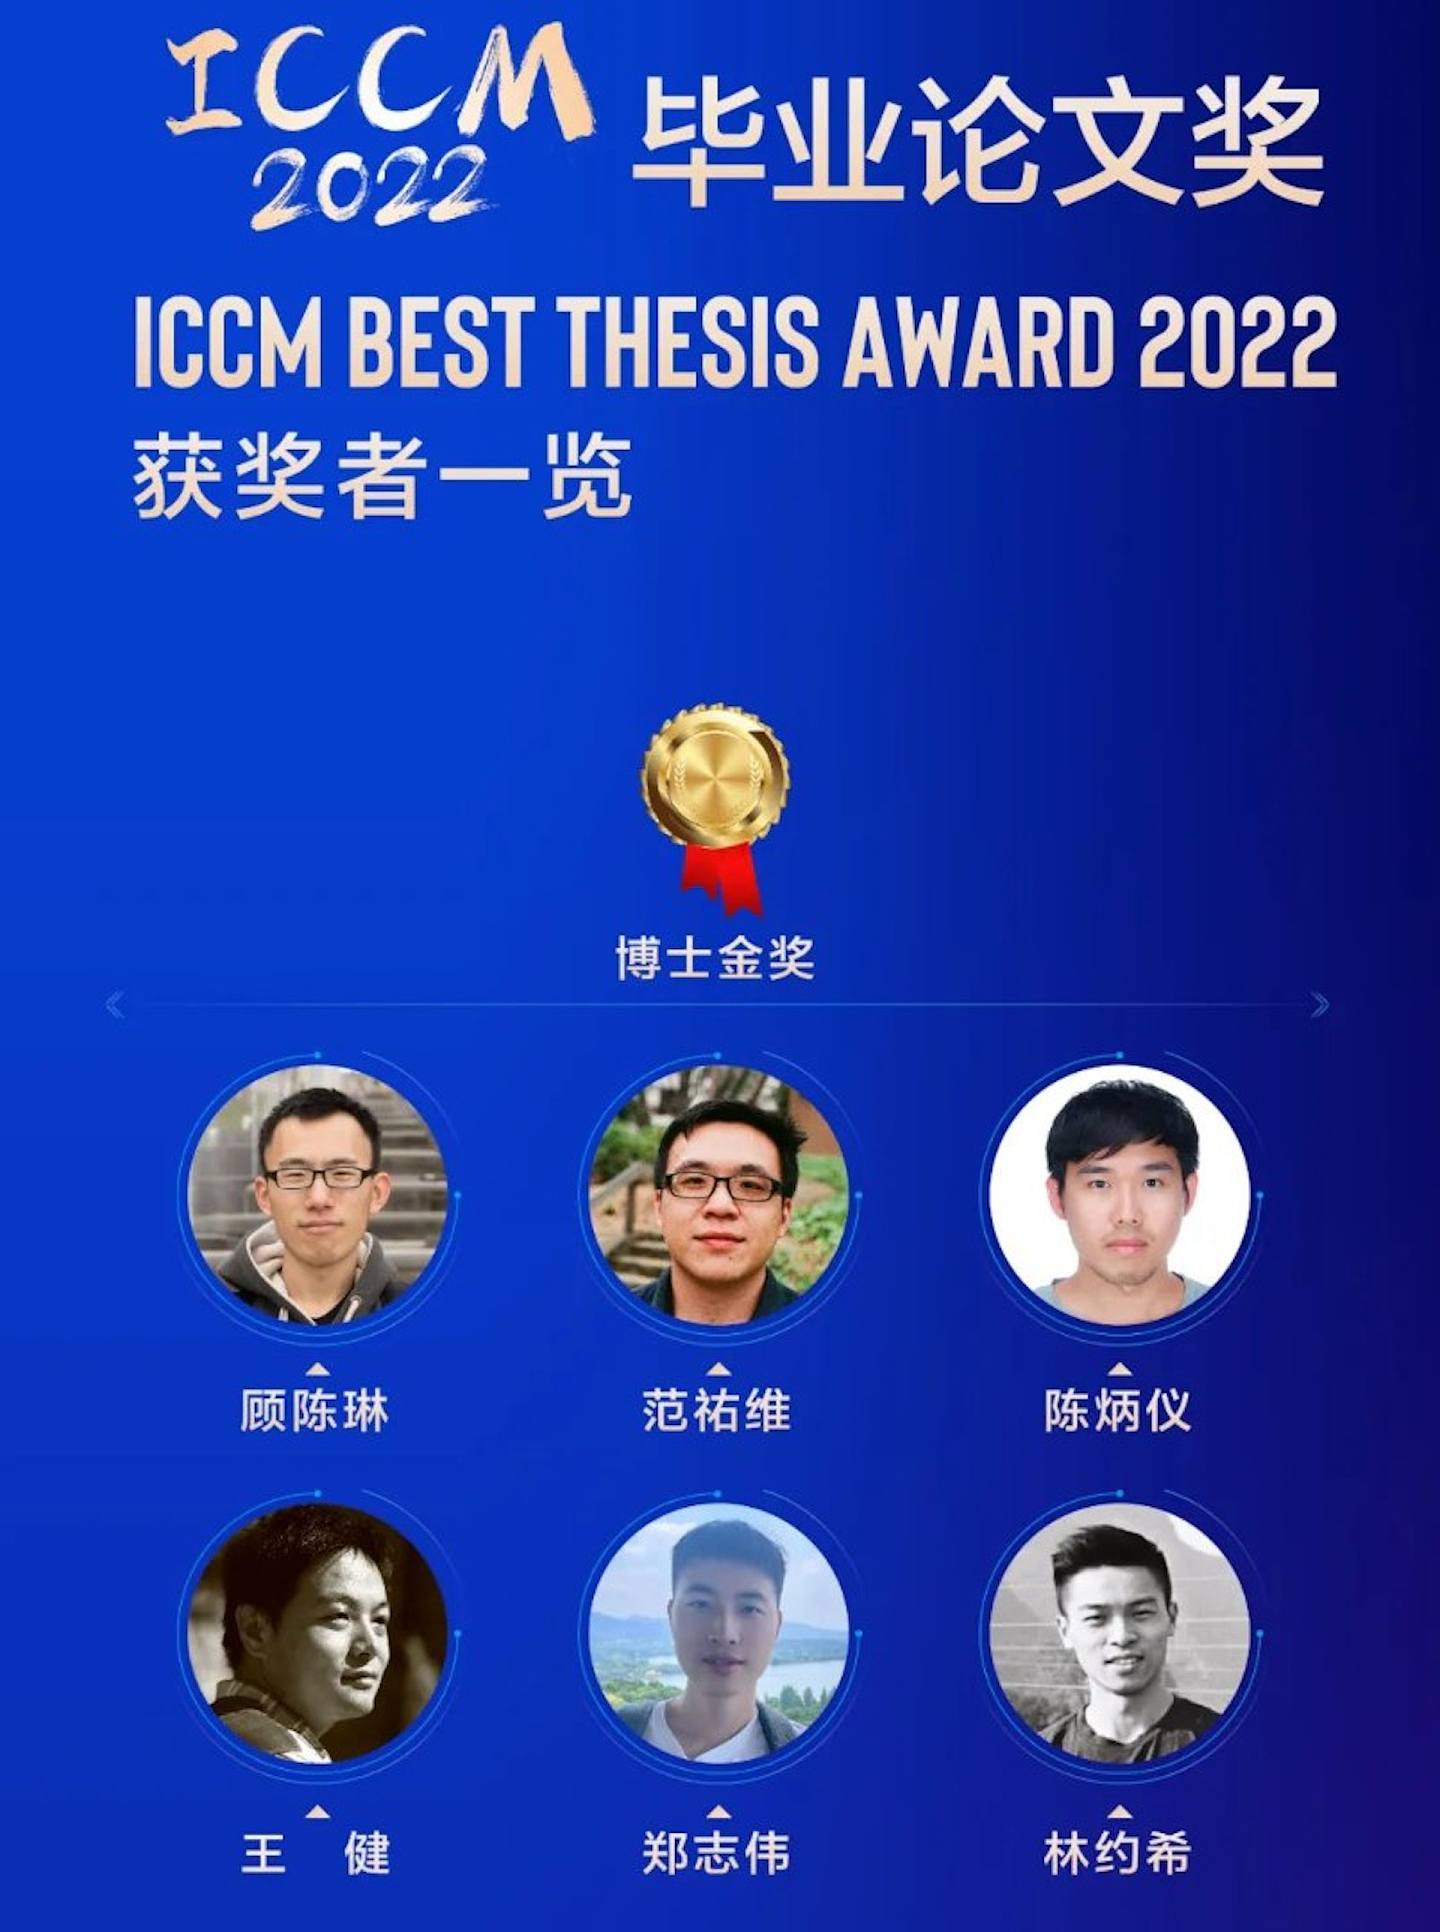 清华大学网页显示得奖者名单。 （清华大学）